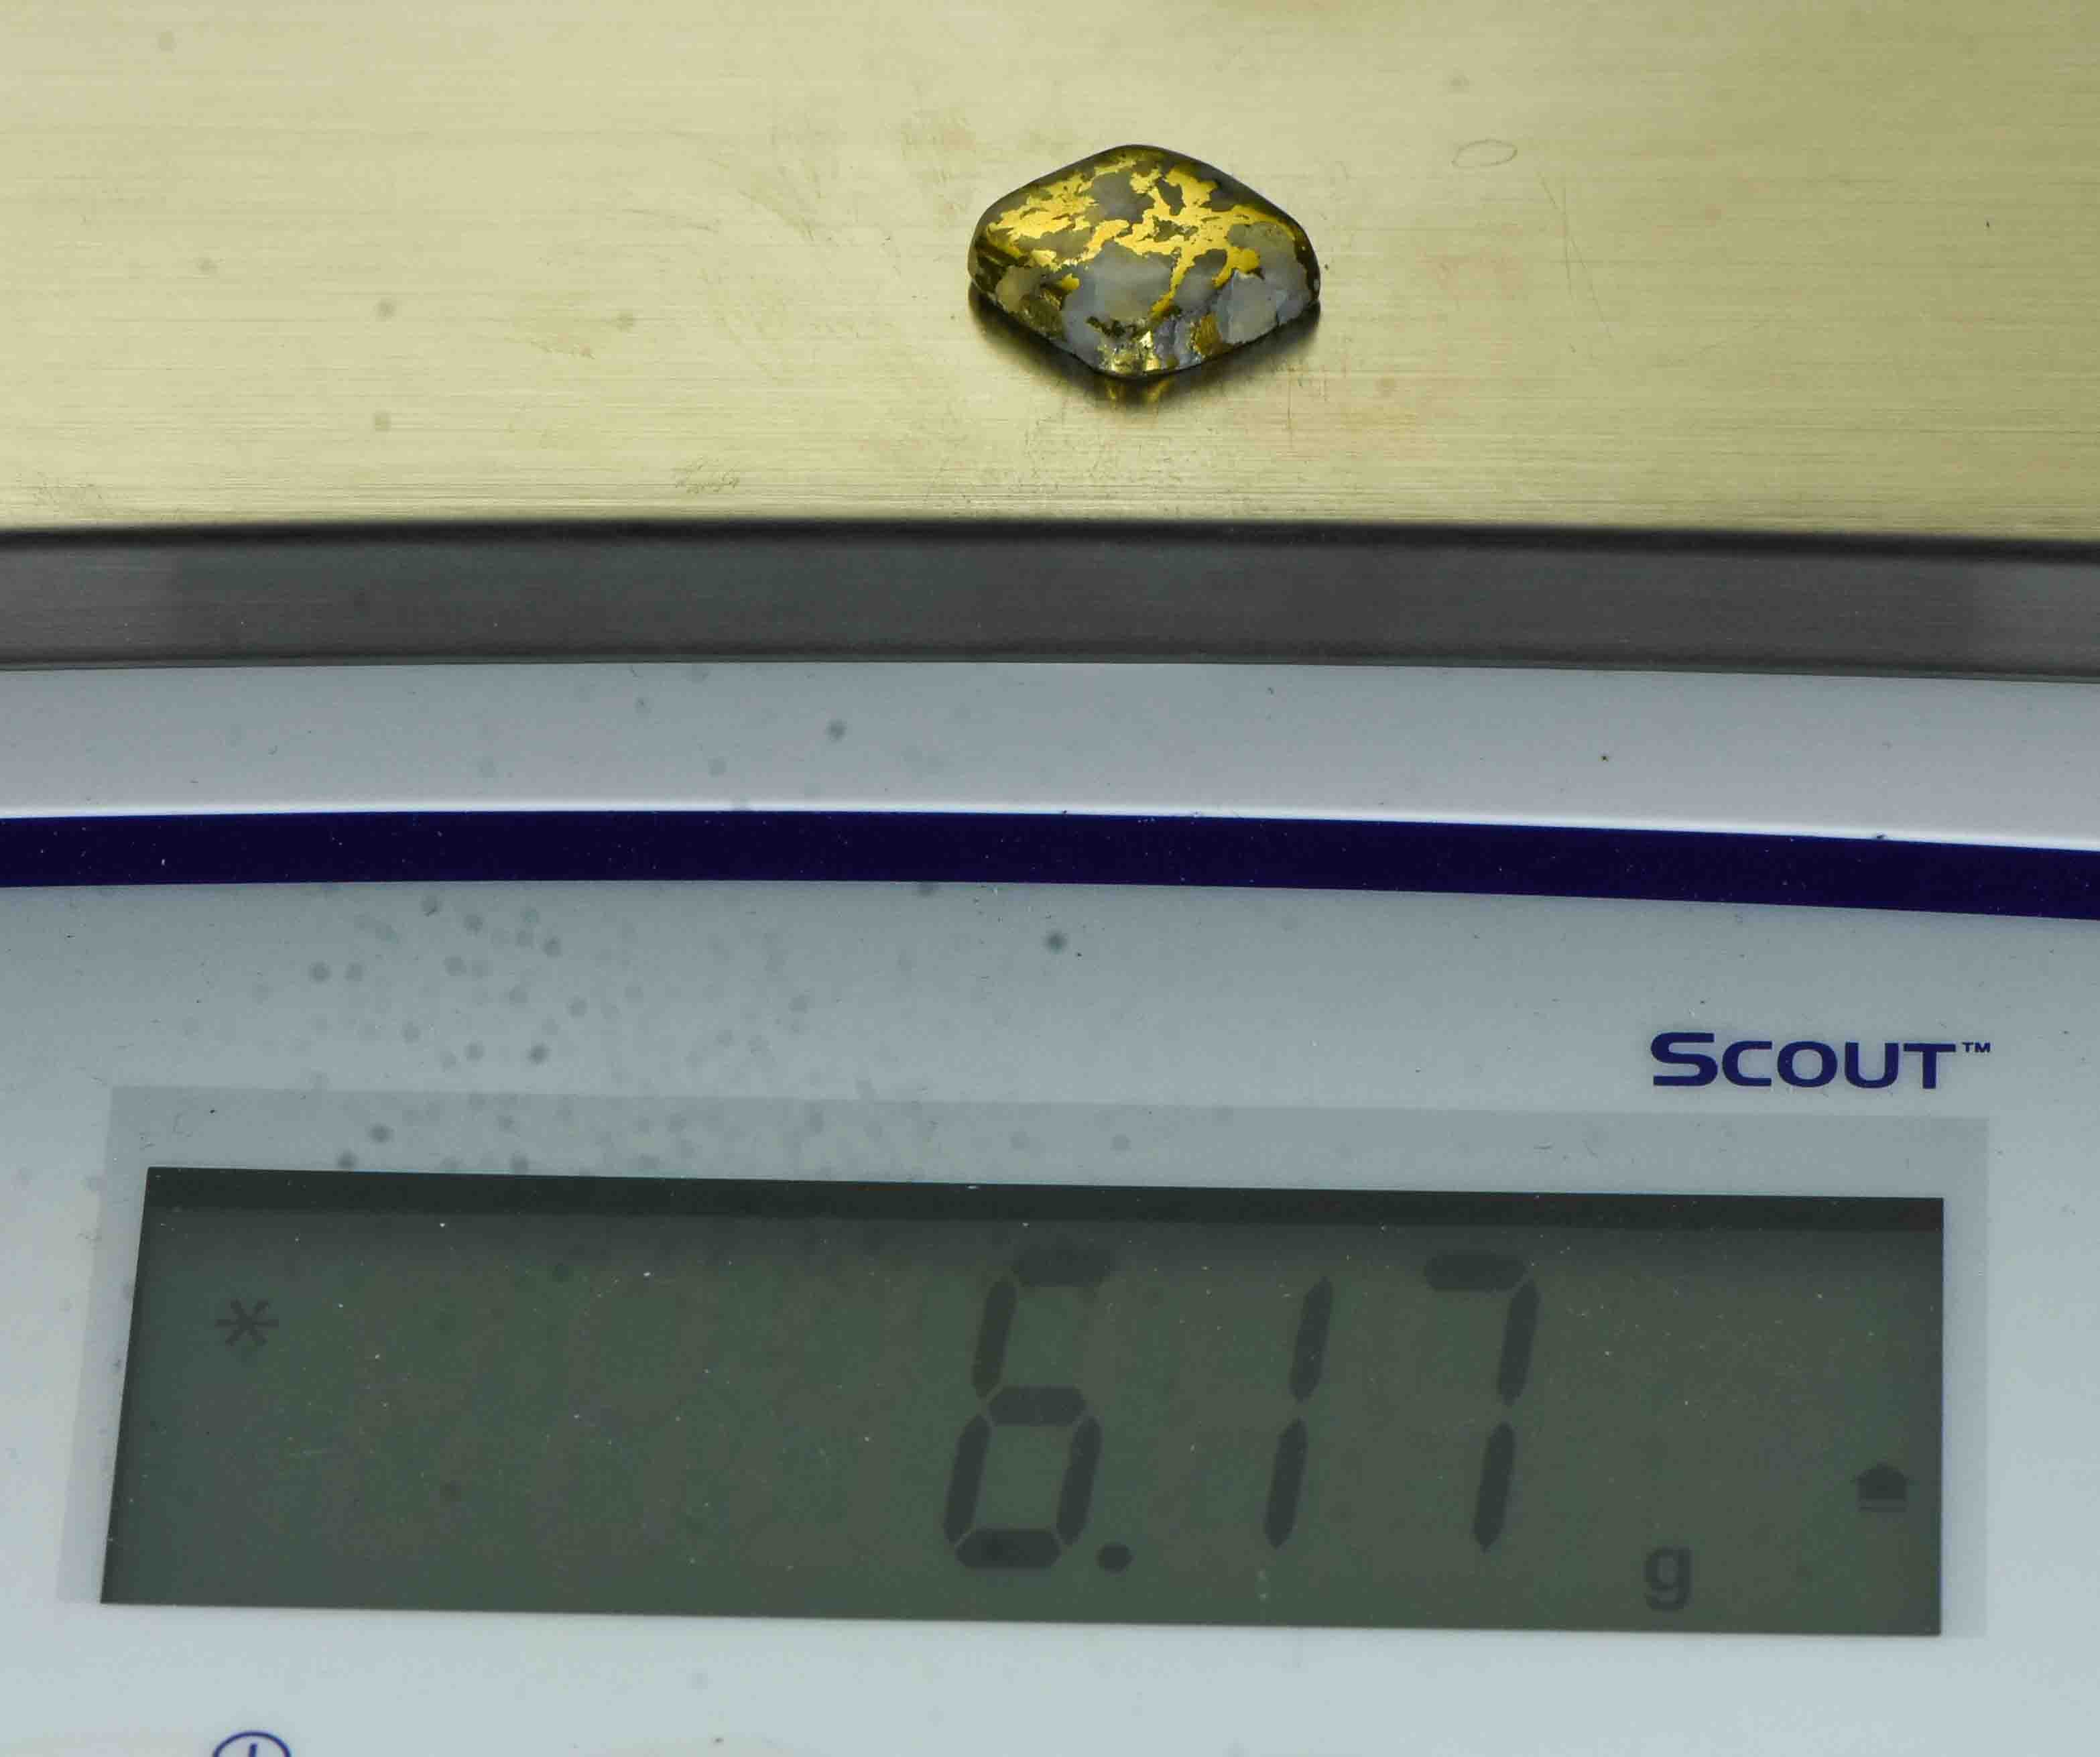 GC-108B Gold Bearing Quartz Cab California 6.17 grams Genuine